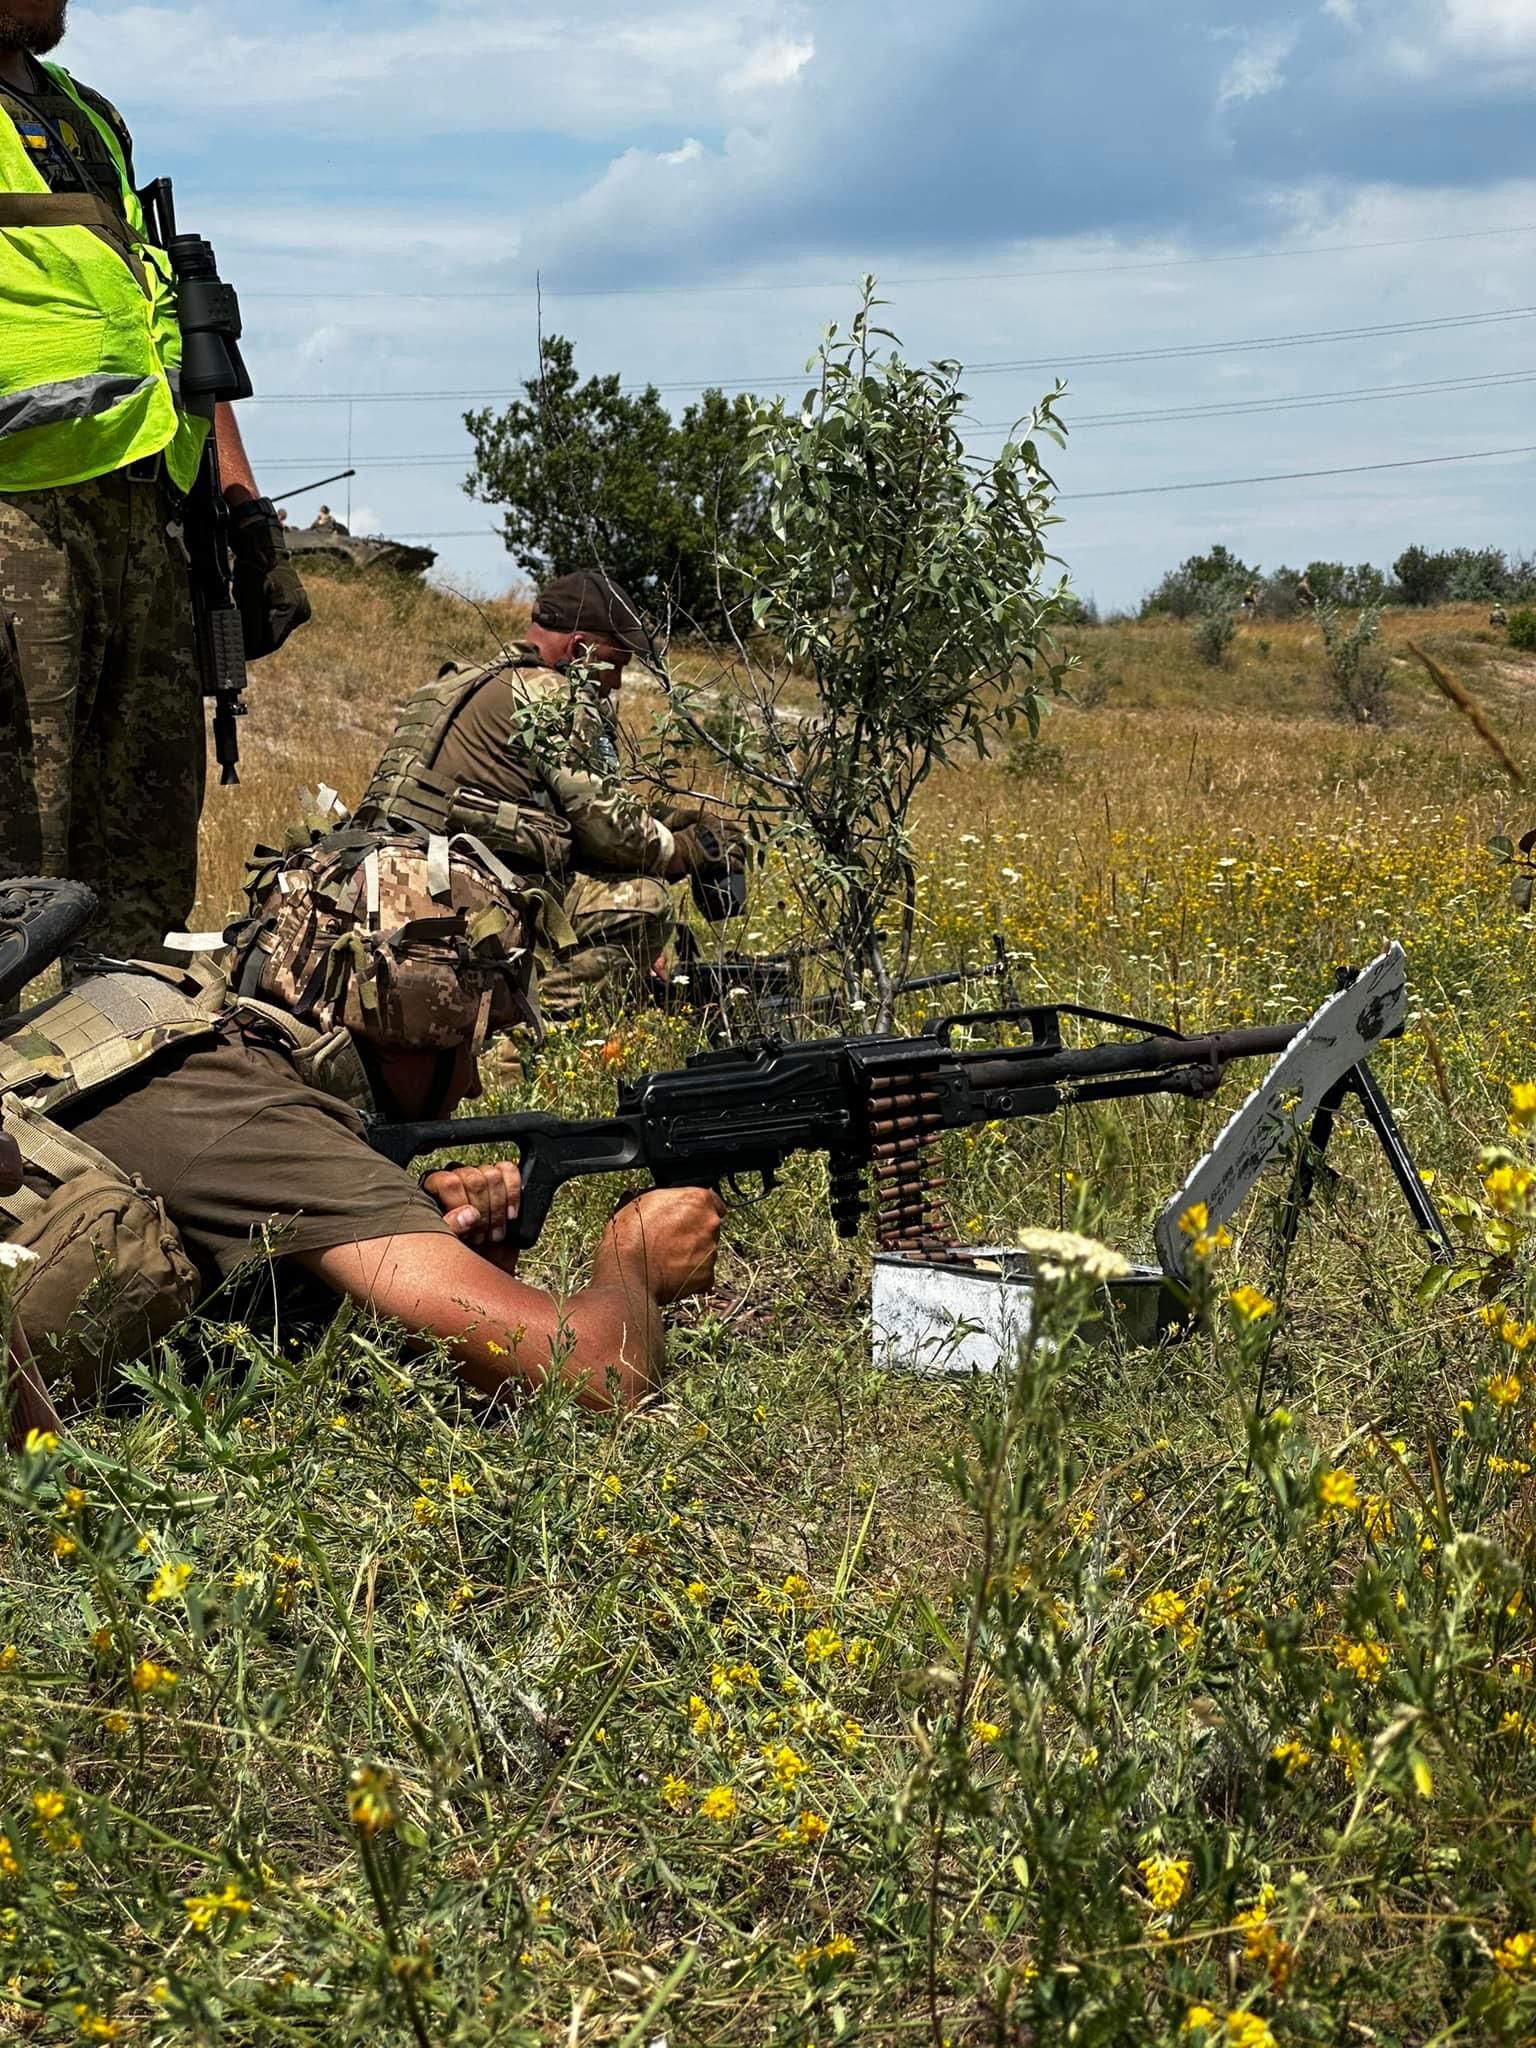 Пентагон про контрнаступ ЗСУ: дається дуже складно, але українці вражають